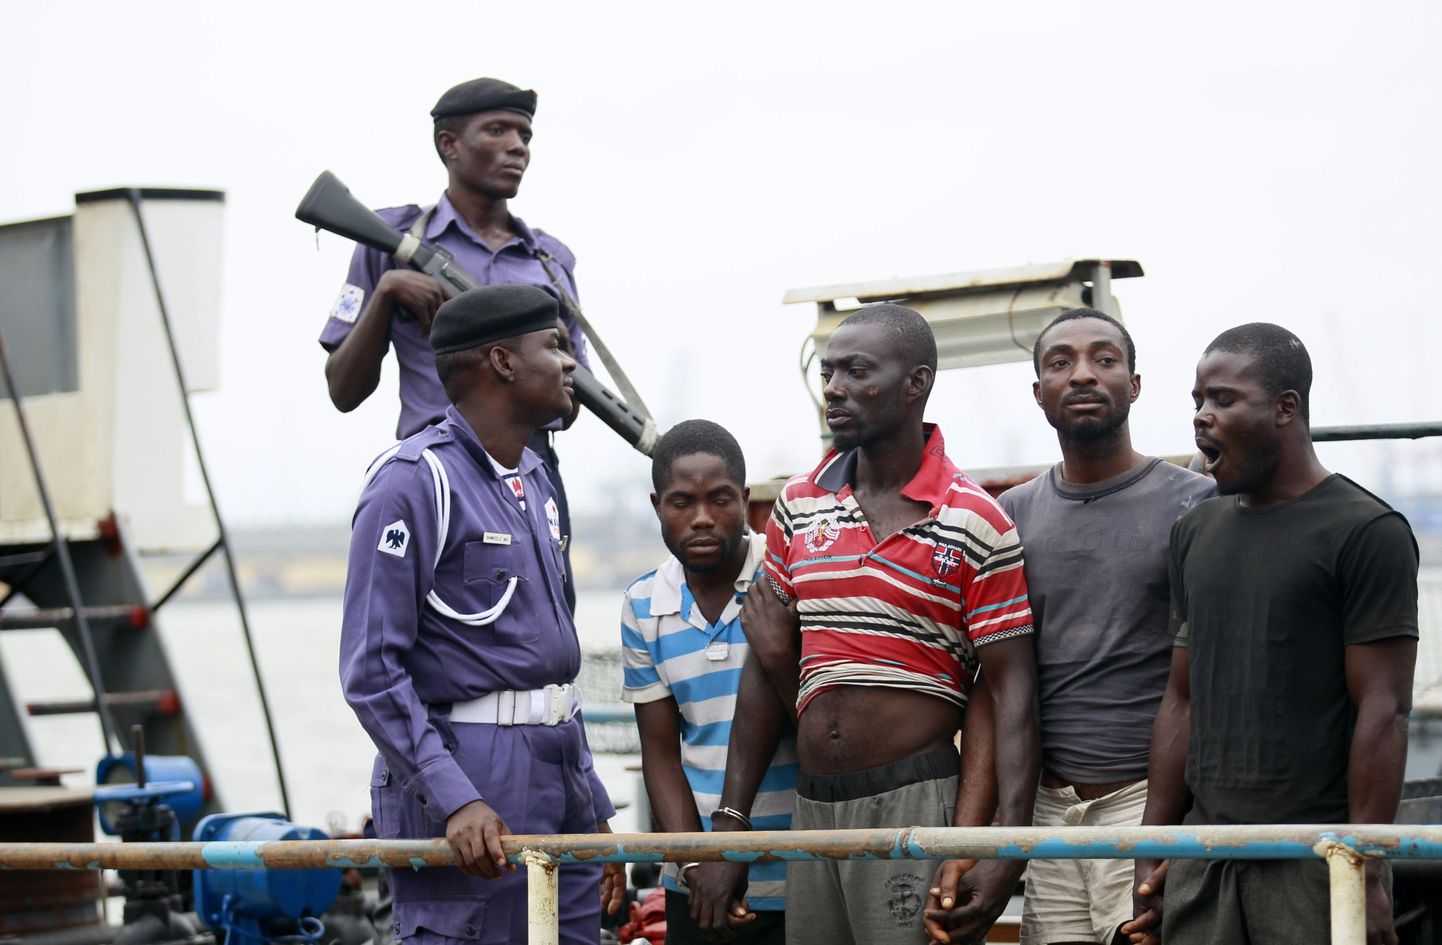 Nigeeria mereväelased kinni peetud kahtlusalustega.